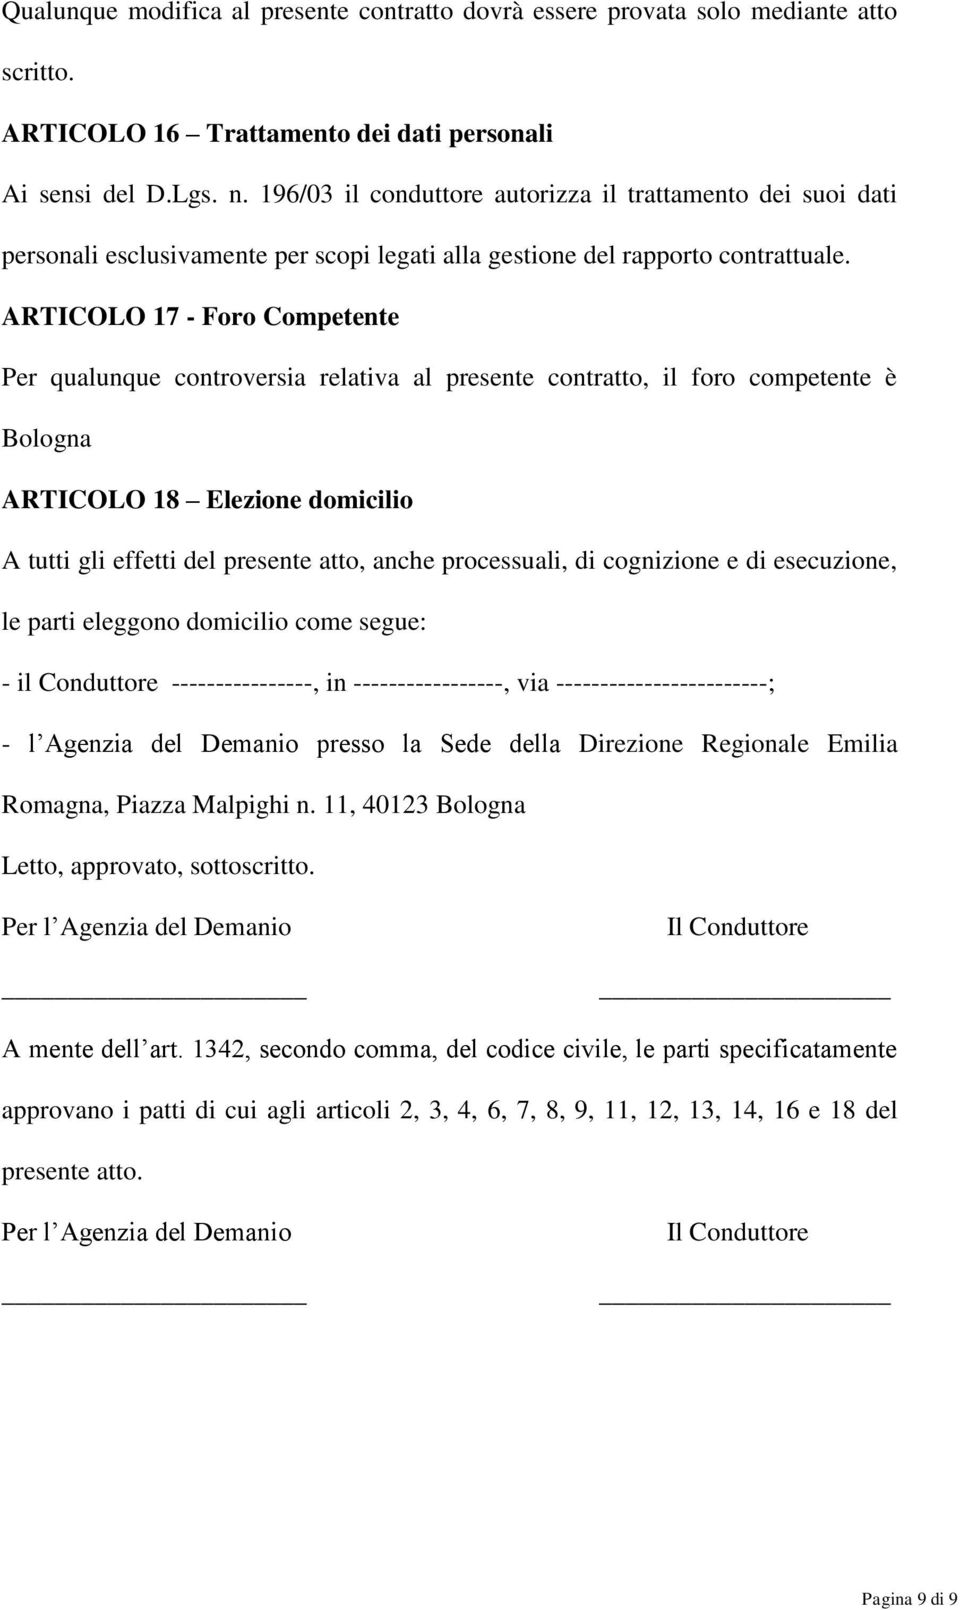 ARTICOLO 17 - Foro Competente Per qualunque controversia relativa al presente contratto, il foro competente è Bologna ARTICOLO 18 Elezione domicilio A tutti gli effetti del presente atto, anche